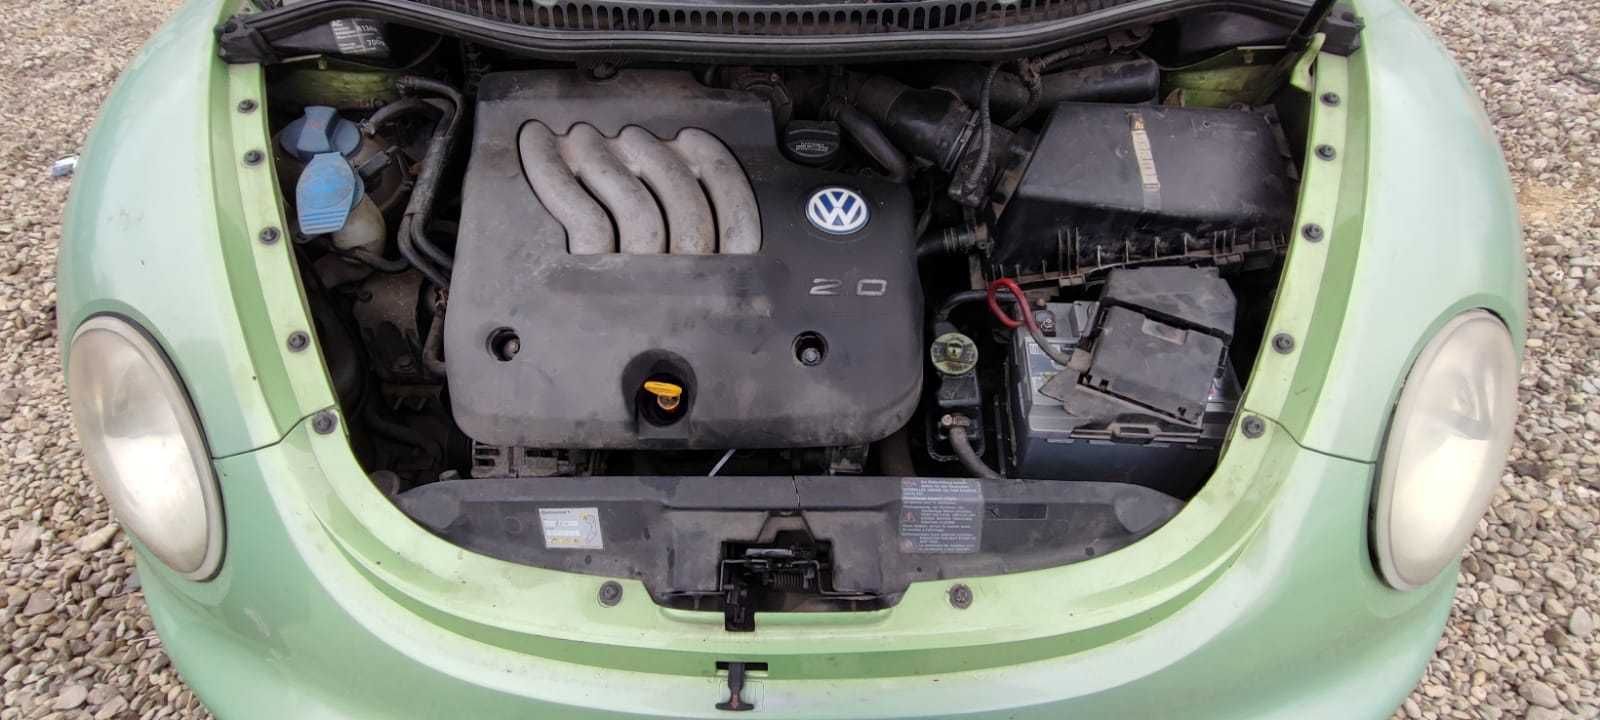 Dezmembrez Volkswagen New Beetle Motor 2.0i cod motor AQY